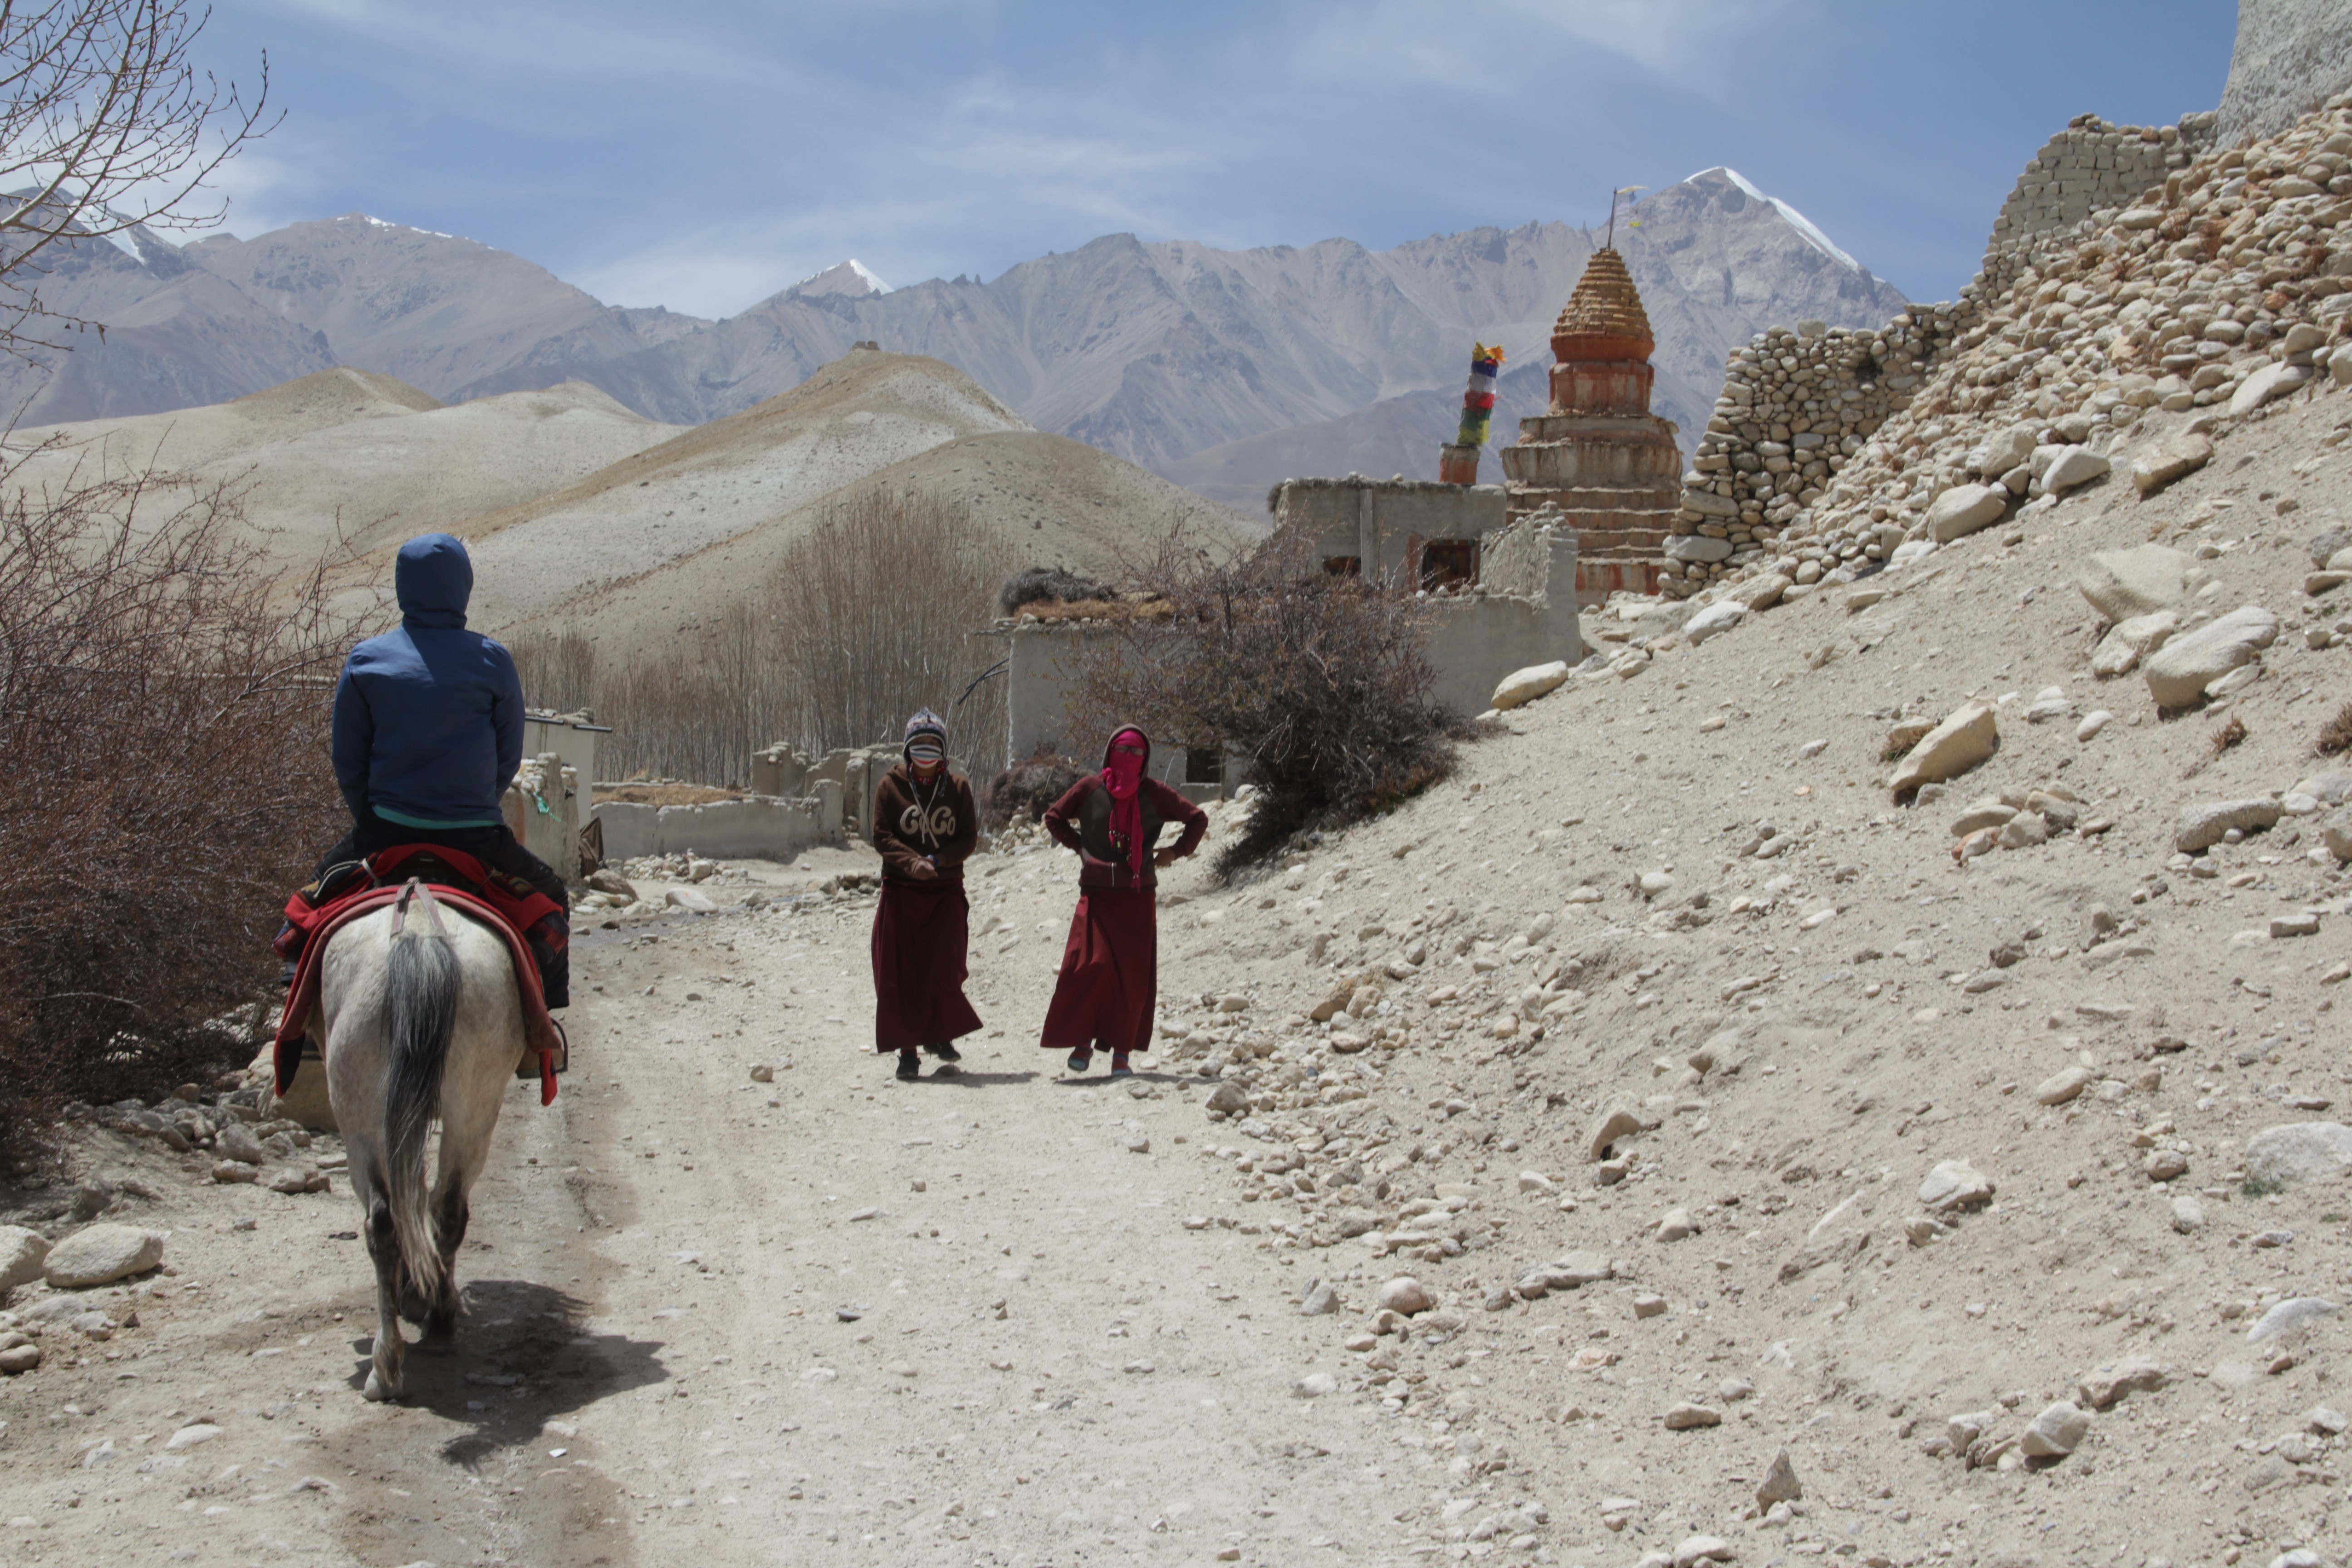 Une journée à cheval dans la vallée désertique de Lo Manthang (© Jérôme Decoster).